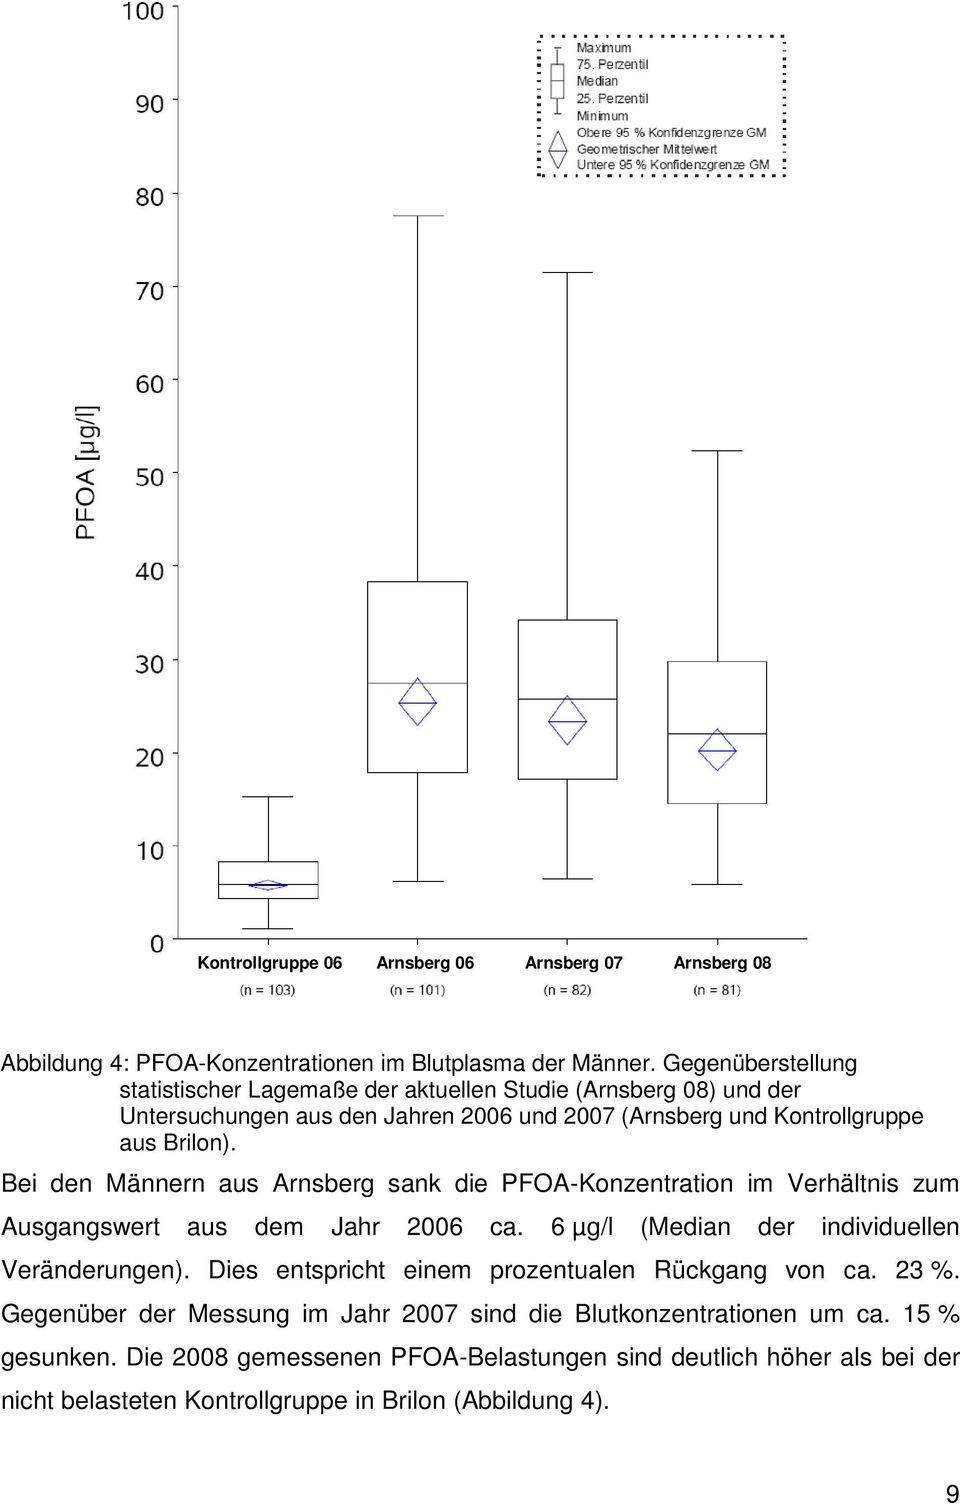 Bei den Männern aus Arnsberg sank die PFOA-Konzentration im Verhältnis zum Ausgangswert aus dem Jahr 2006 ca. 6 µg/l (Median der individuellen Veränderungen).